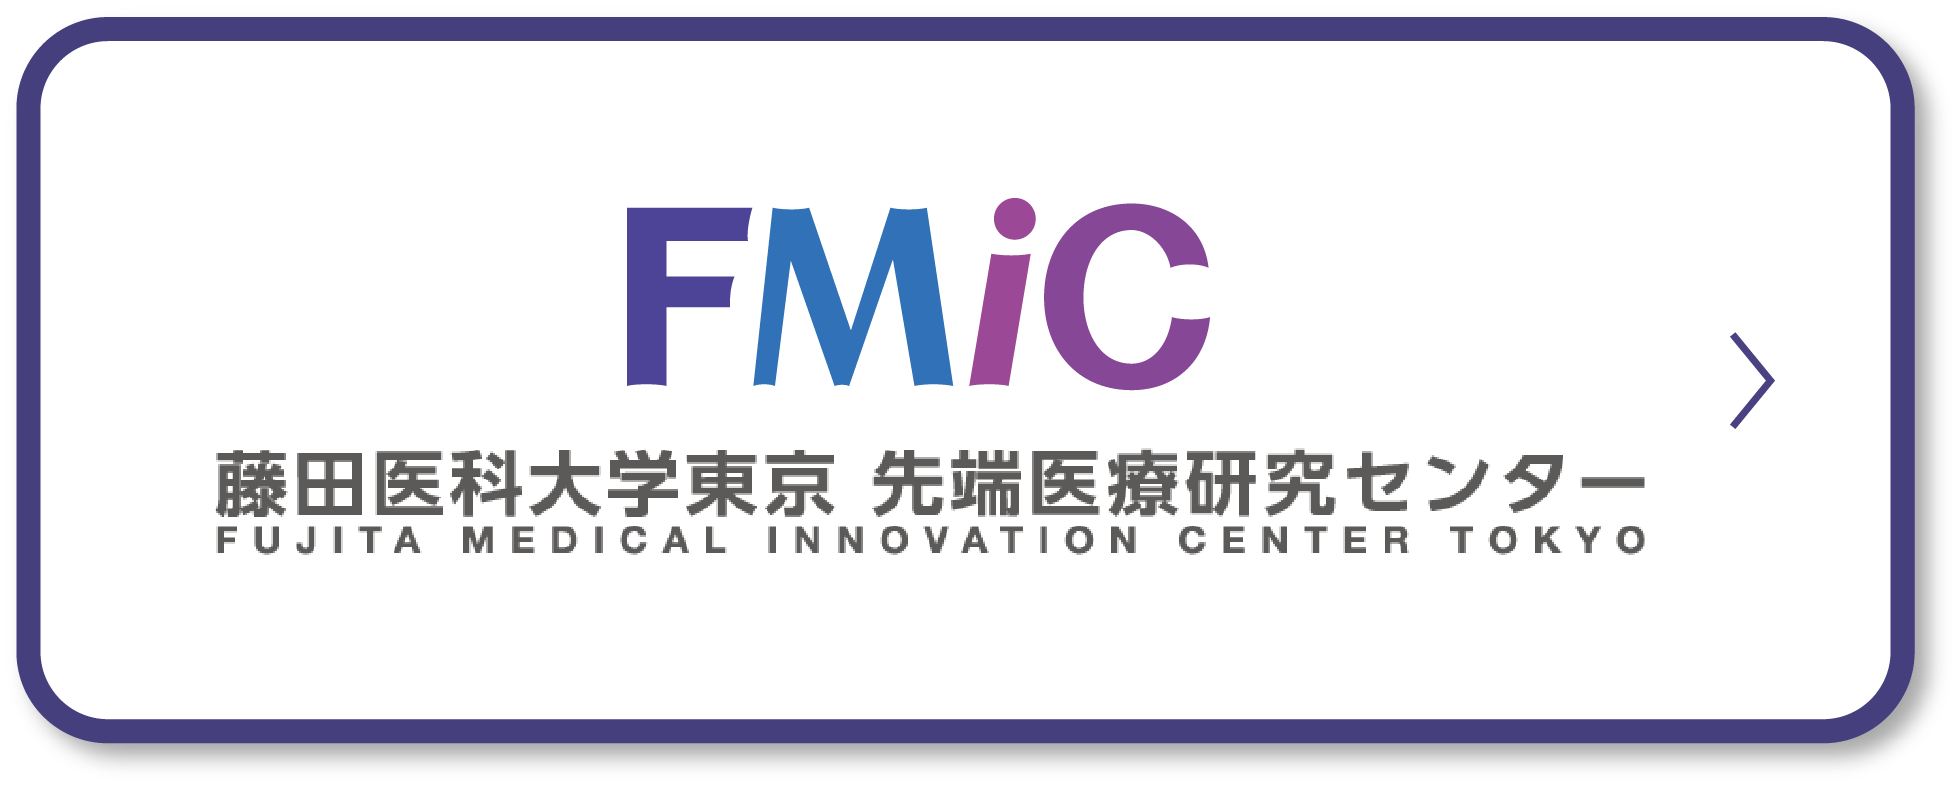 FMiC 藤田医科大学東京 先端医療研究センター